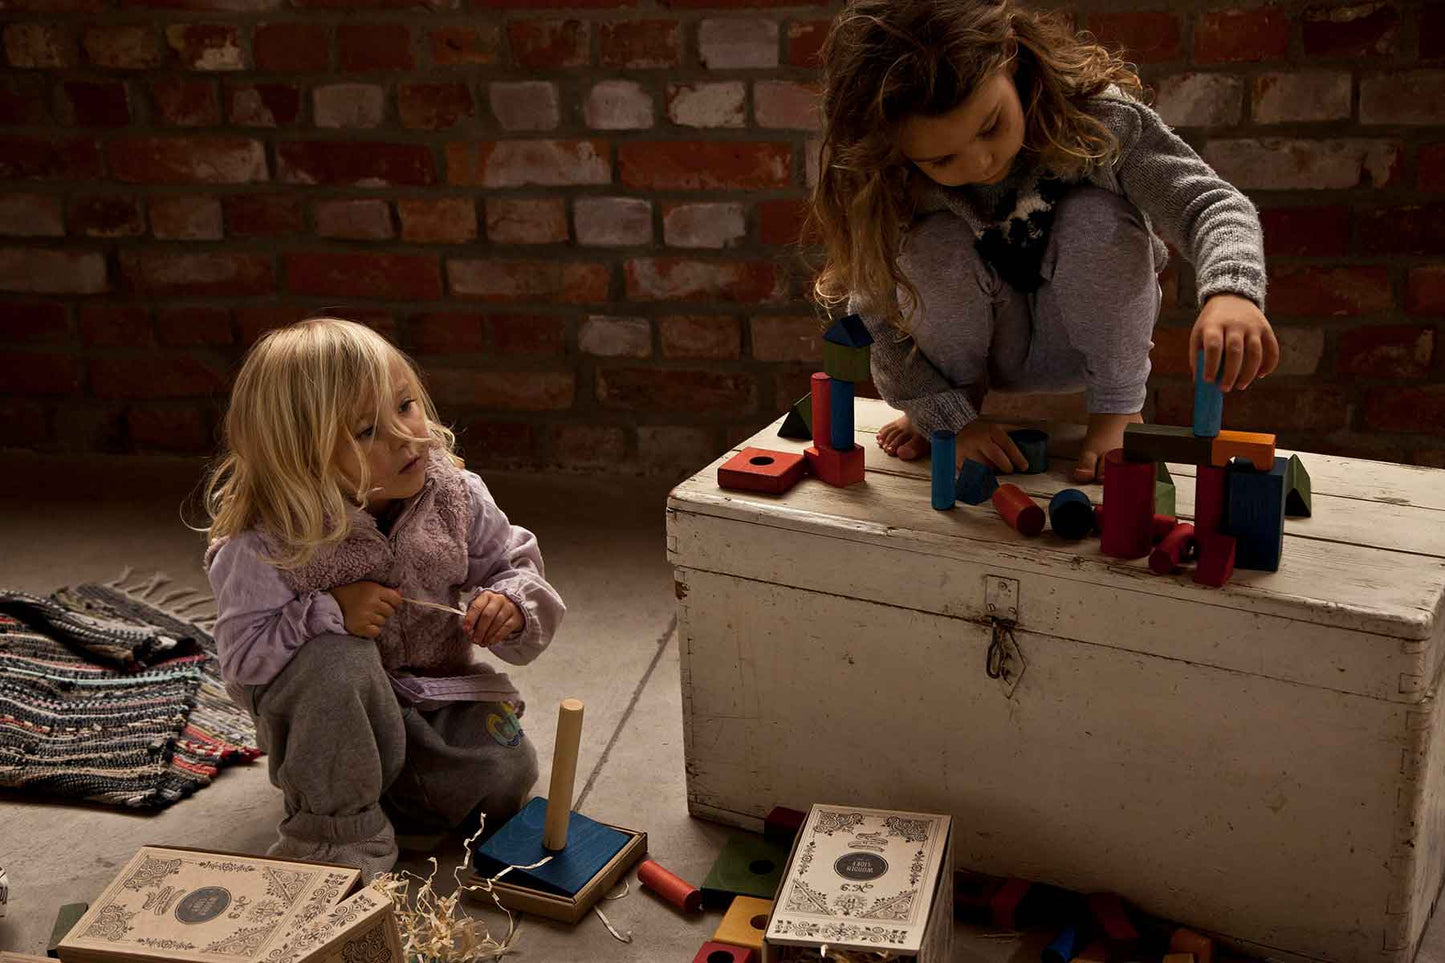 Bauklötze mit Holzkiste Regenbogen Montessori Holzspielzeug